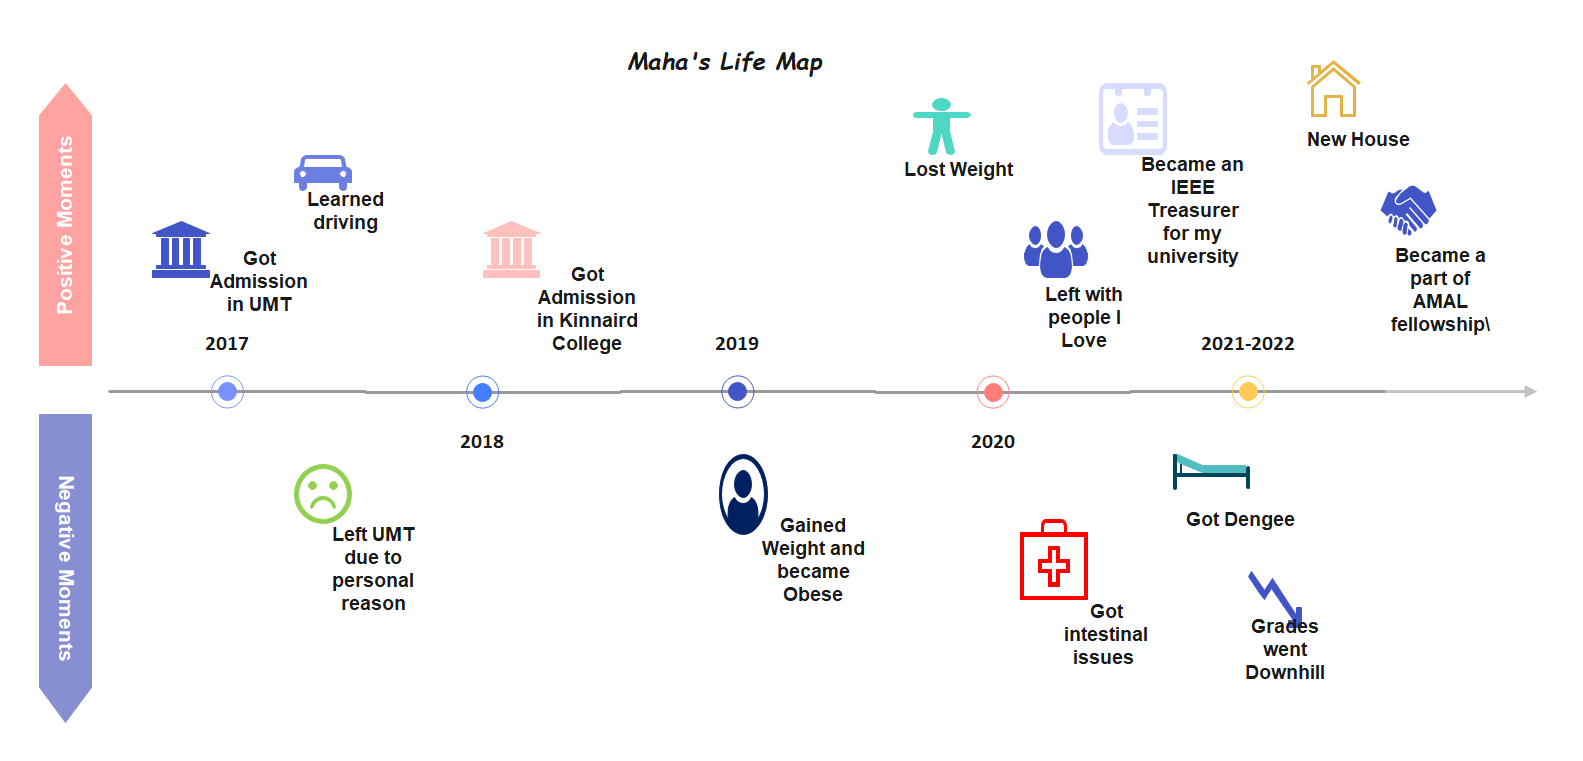 Maha's Life Map